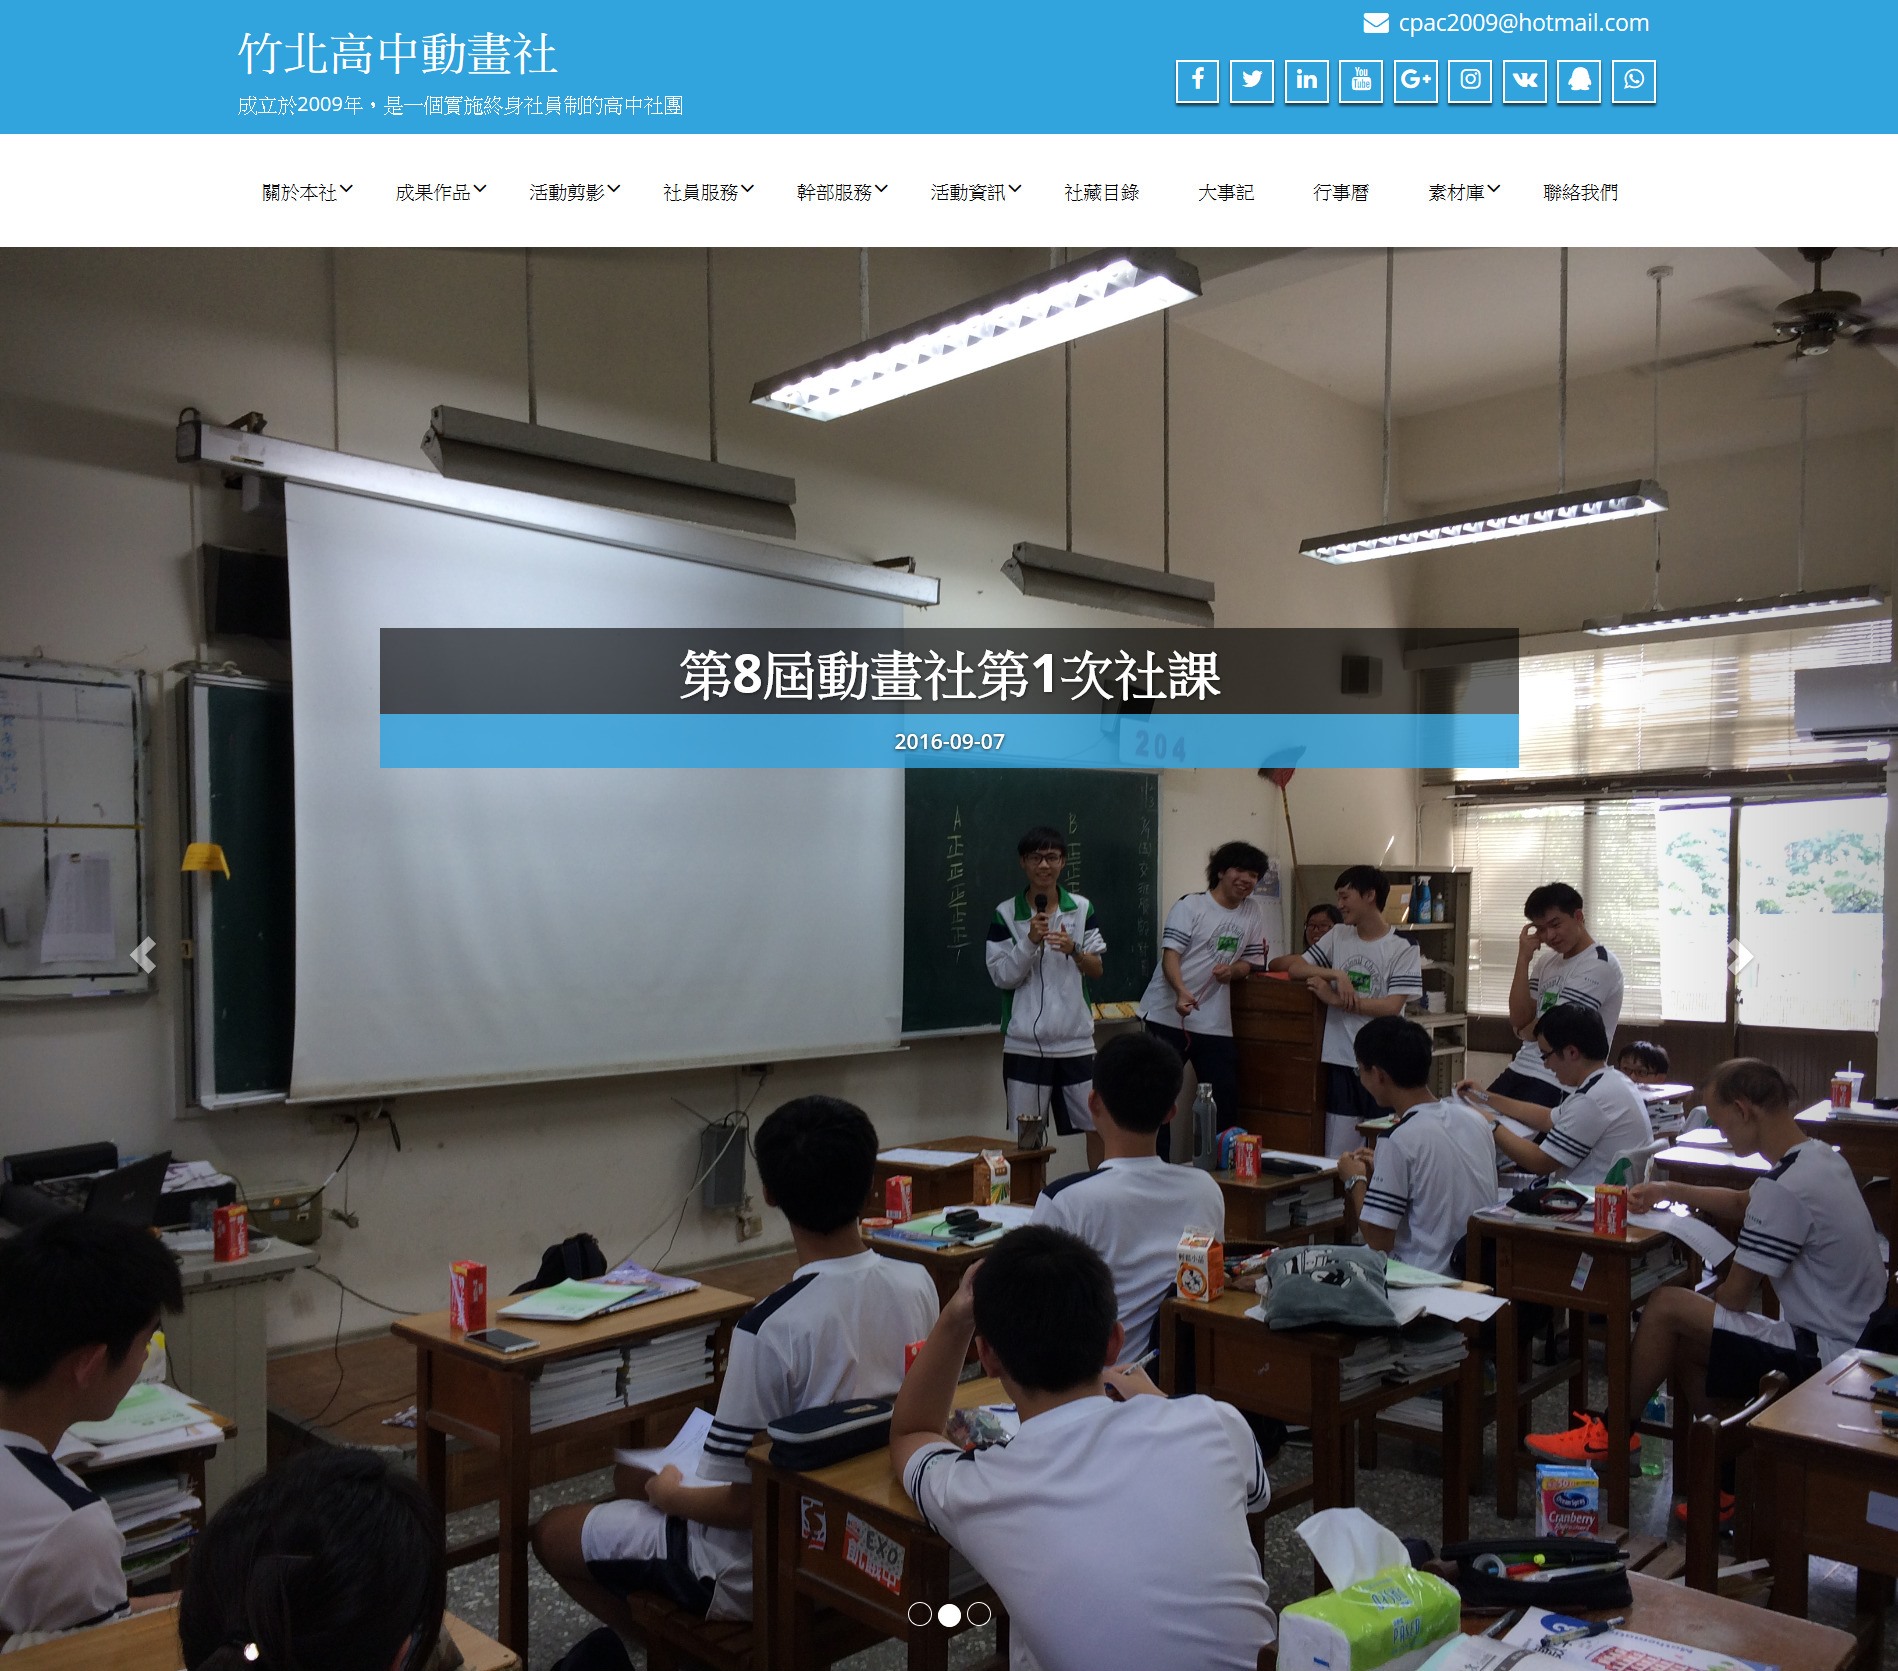 竹北高中動畫社官方網站